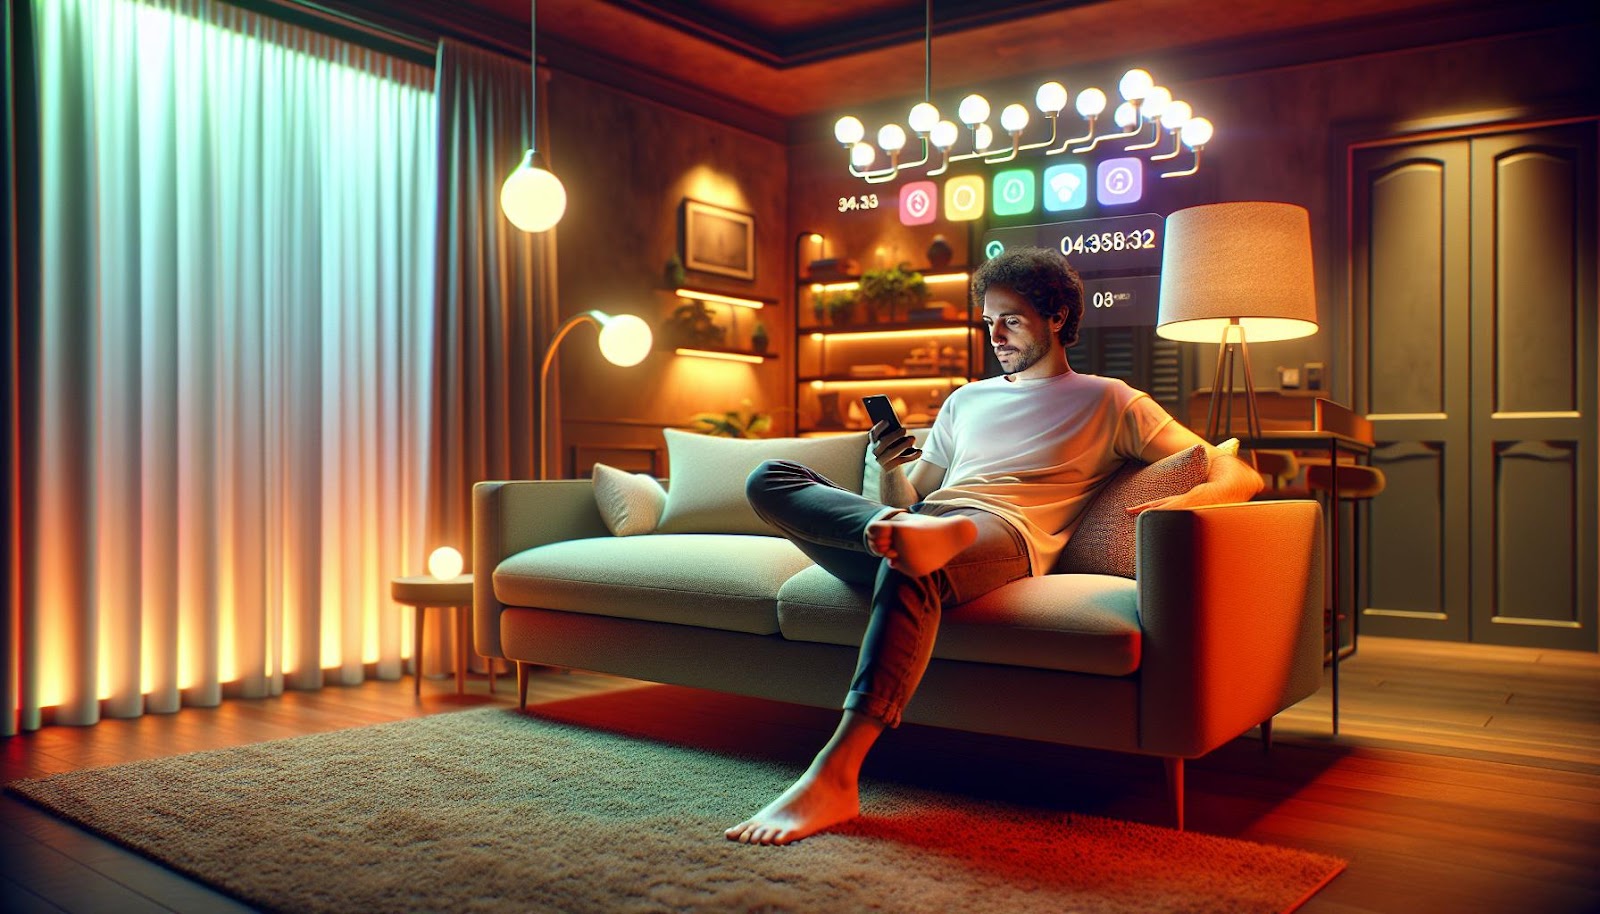 Iluminação inteligente: a revolução do conforto e eficiência em sua casa